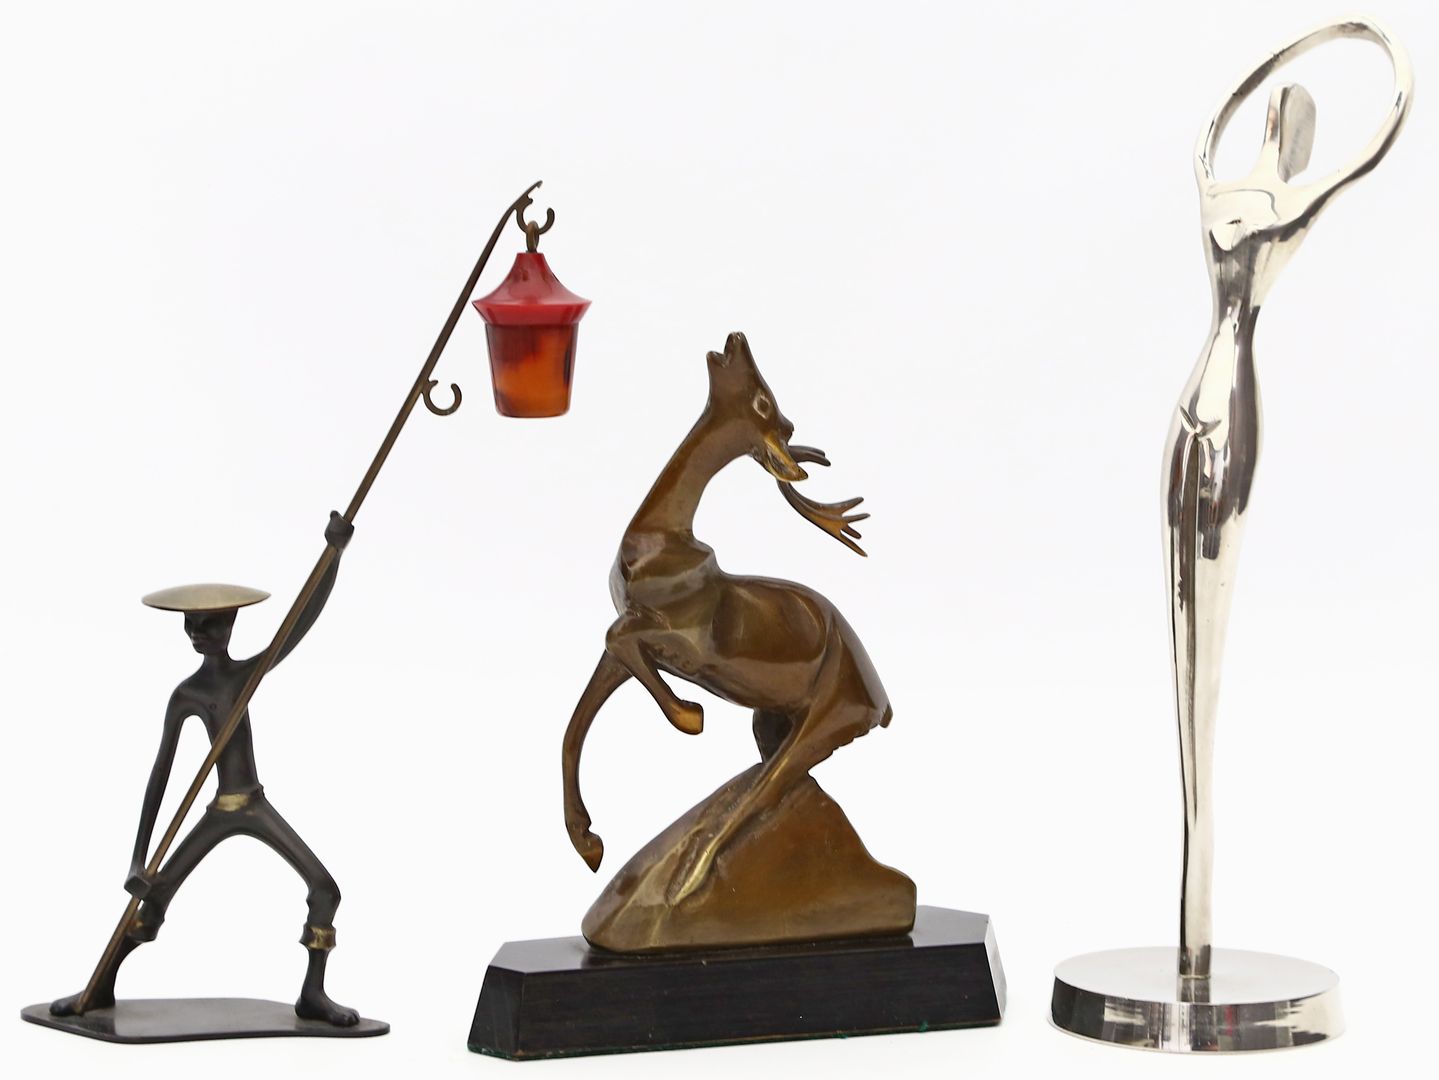 3 figürliche Skulpturen: